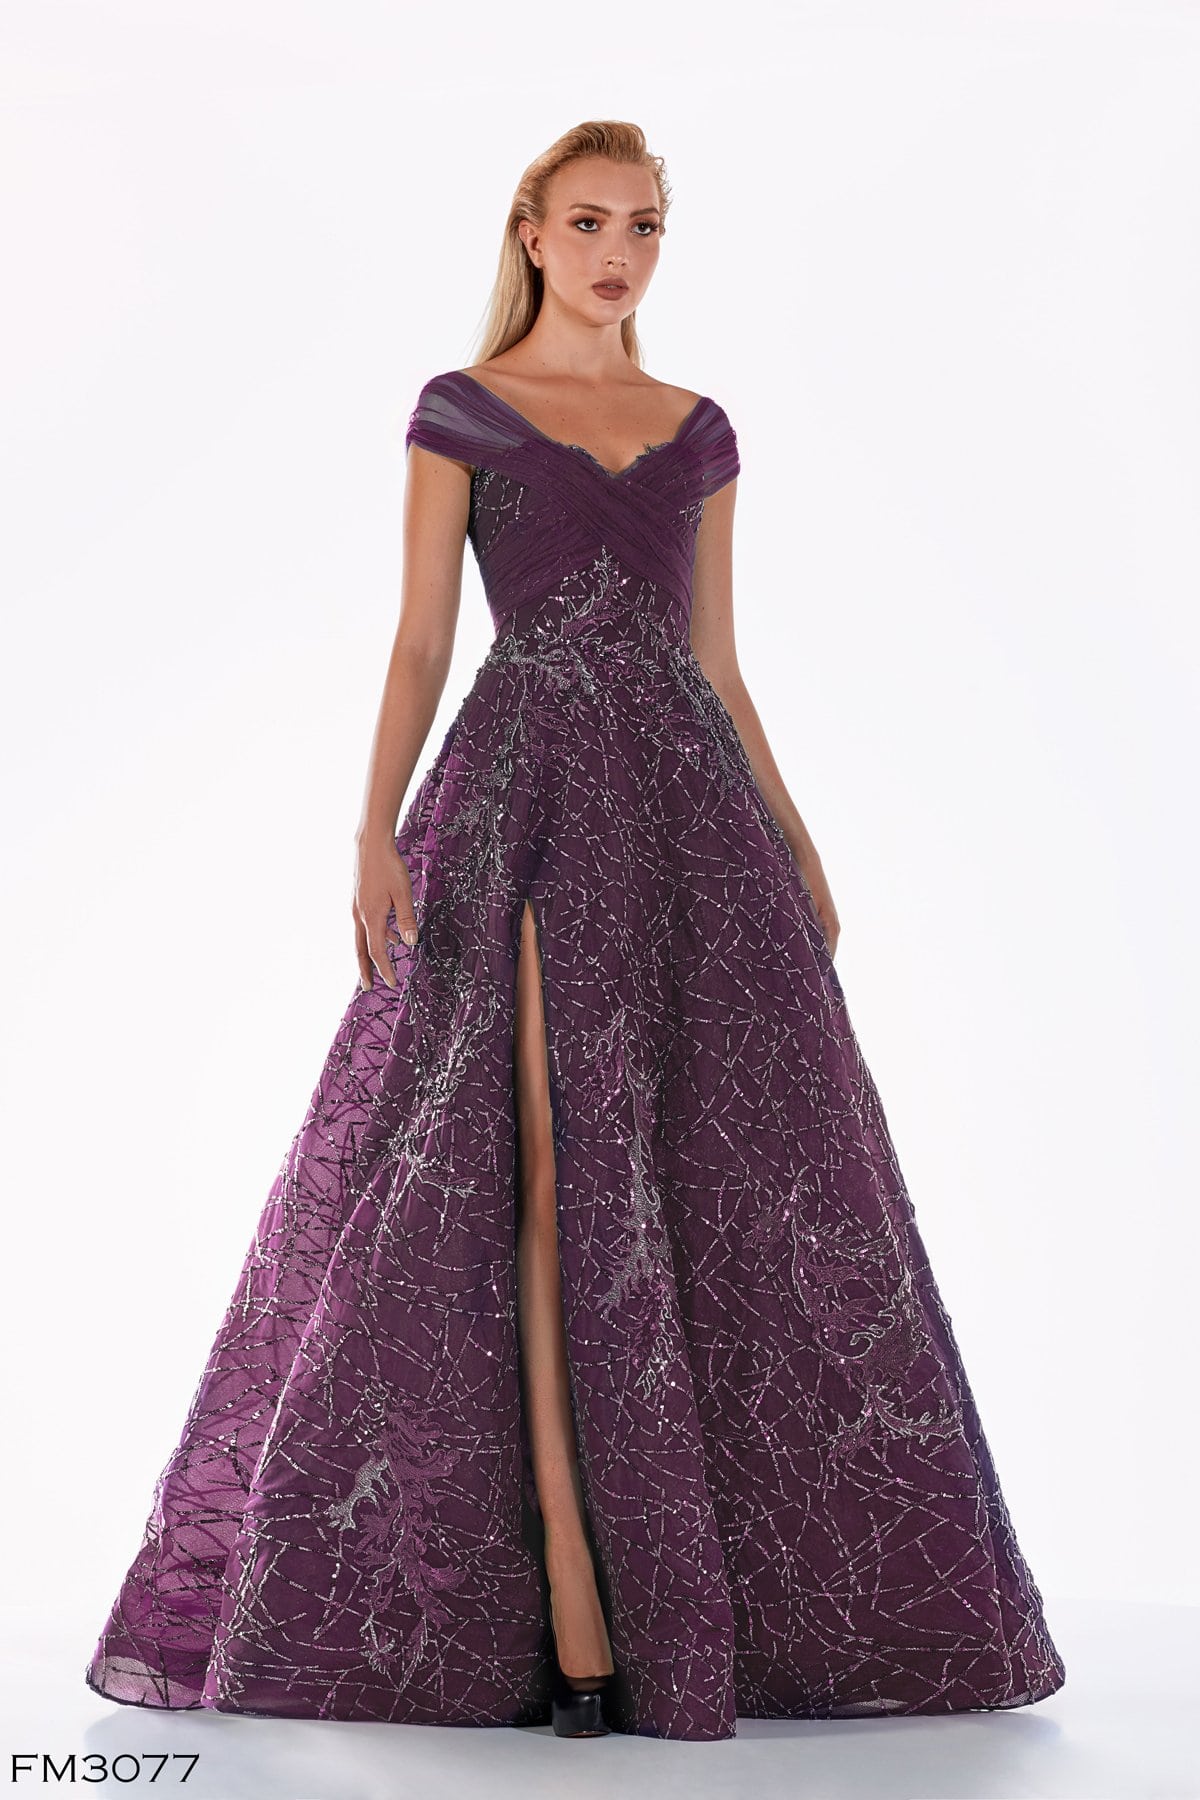 Azzure Couture FM3077 Dark Purple Glowing Long Dress on model - Rofial Beauty